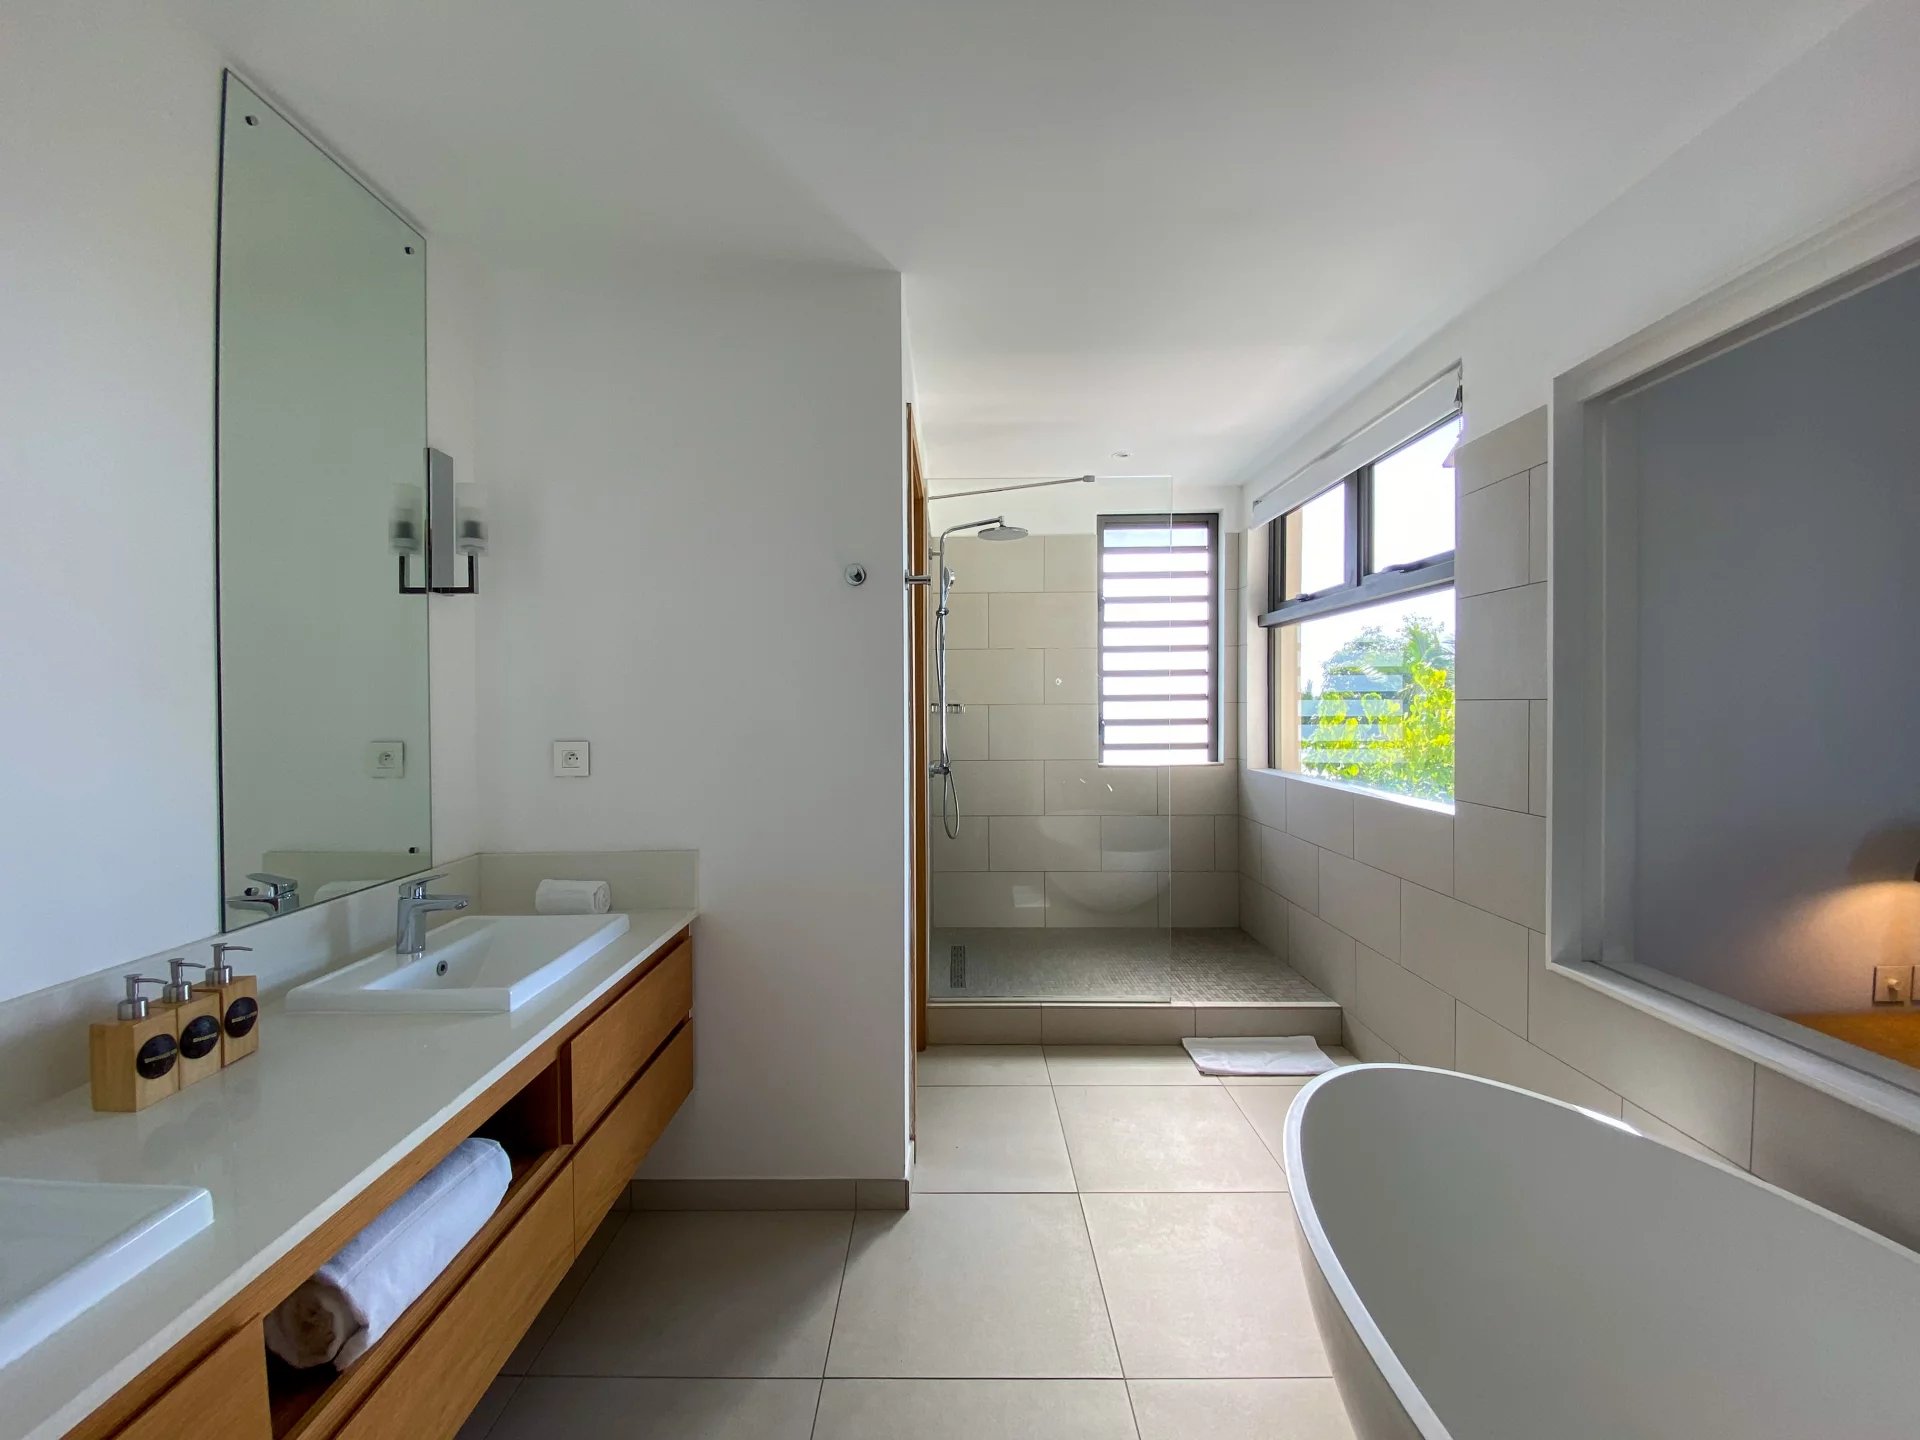 GRAND GAUBE - Magnificent villa - 4 bedrooms - picture 11 title=